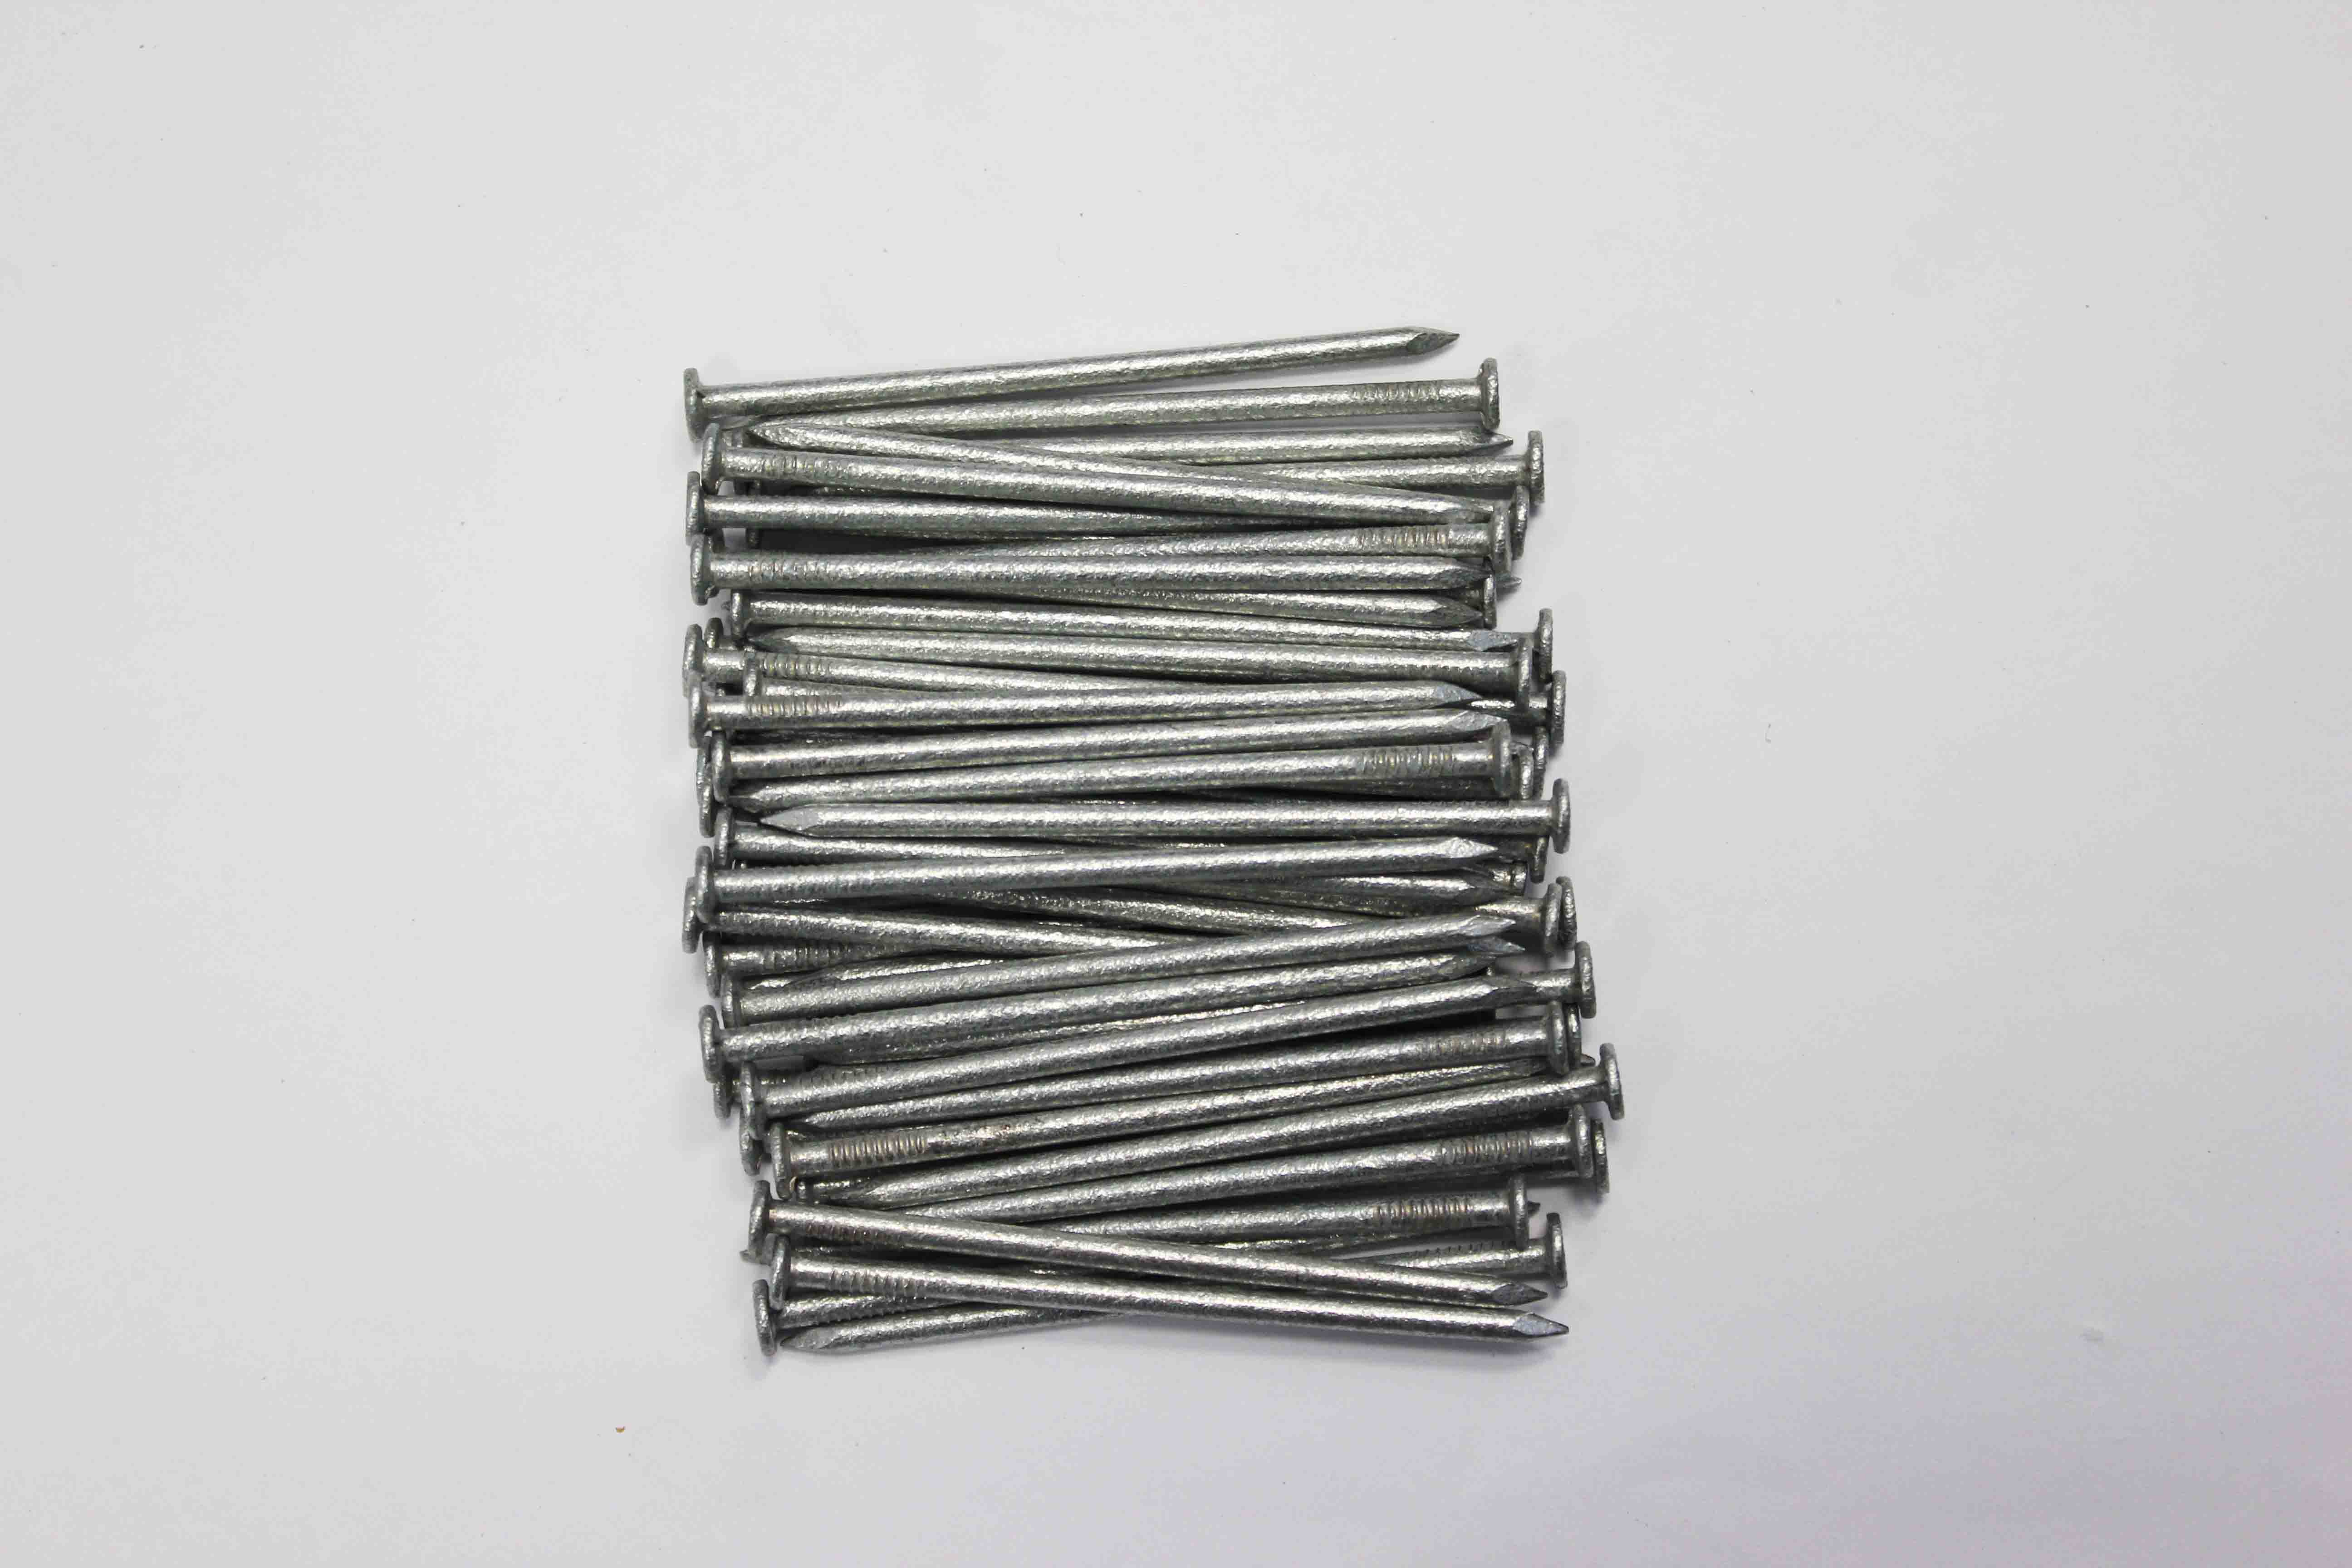 65mm round wire nails